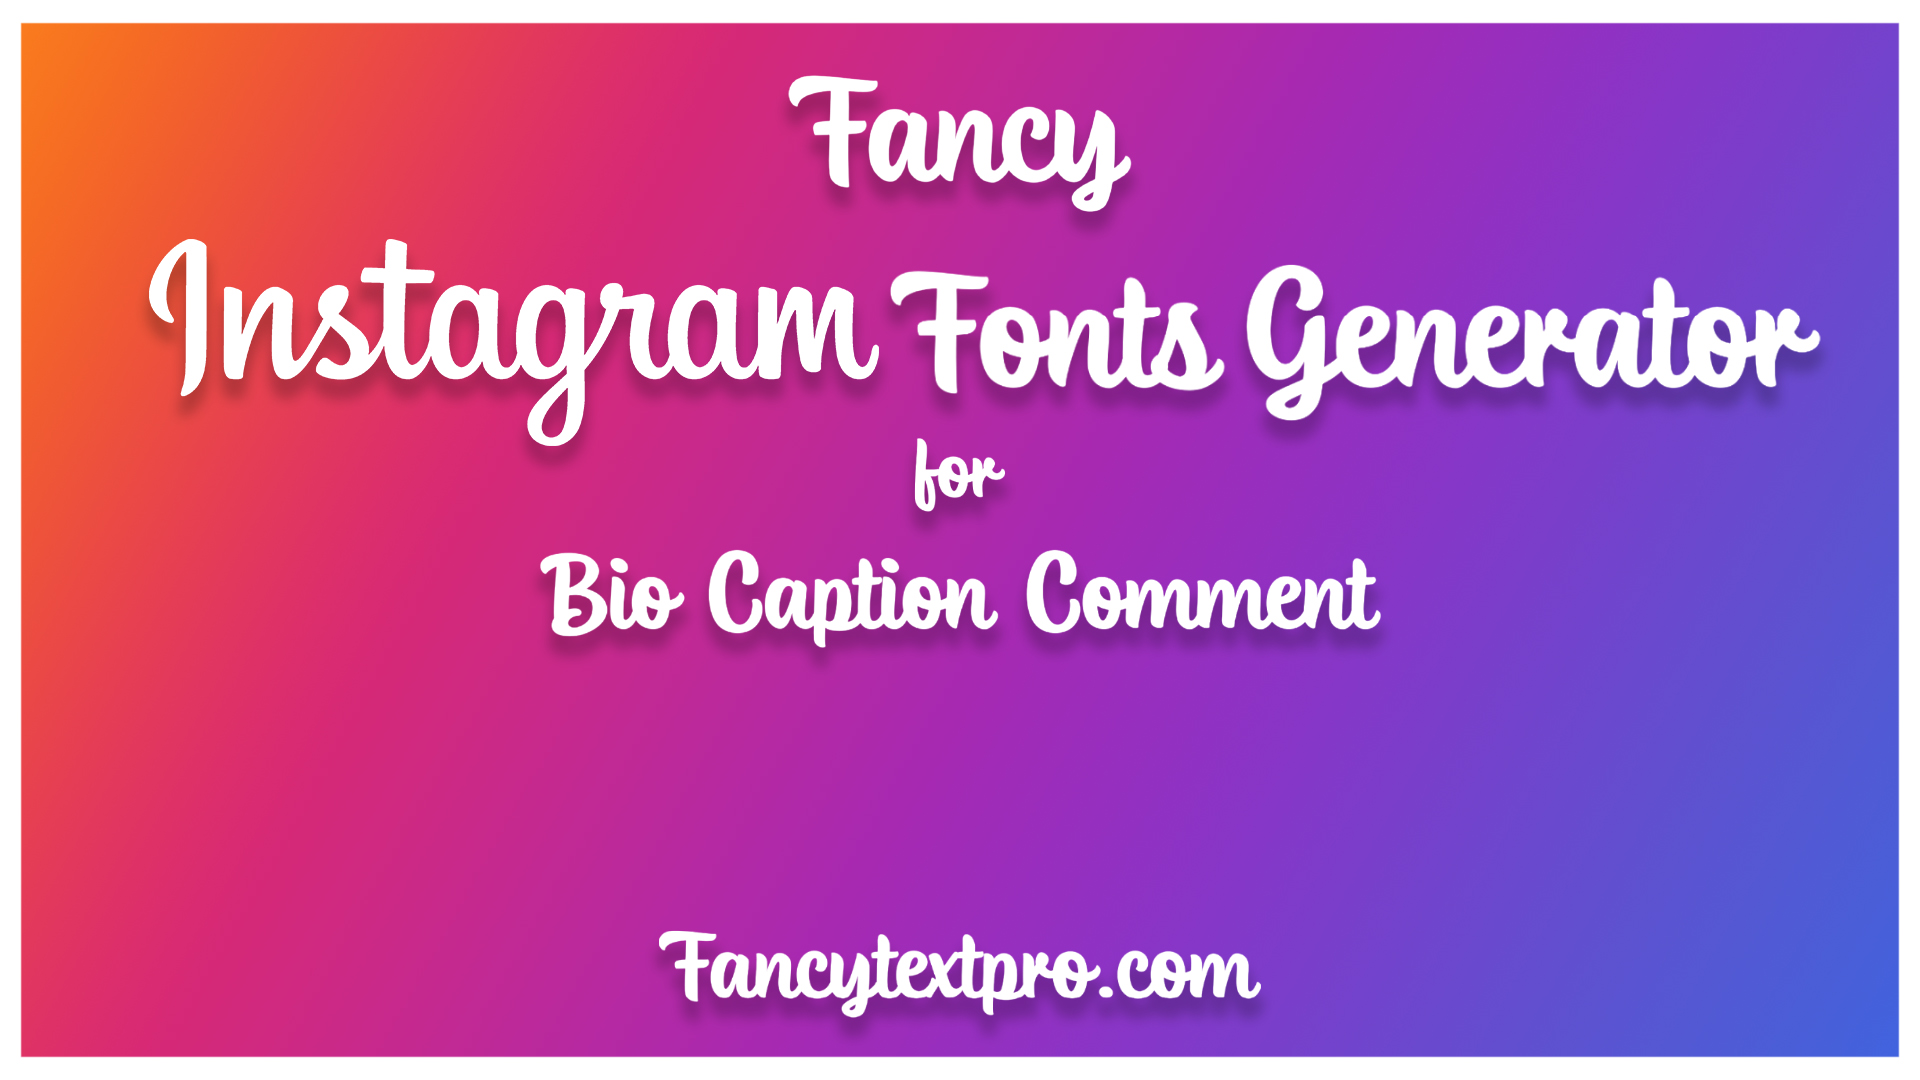 Instagram Fonts Generator 🤩 ℂ𝕠𝕠𝕝 𝕗𝕠𝕟𝕥𝕤 𝒸𝑜𝓅𝓎 𝒶𝓃𝒹 𝓅𝒶𝓈𝓉𝑒